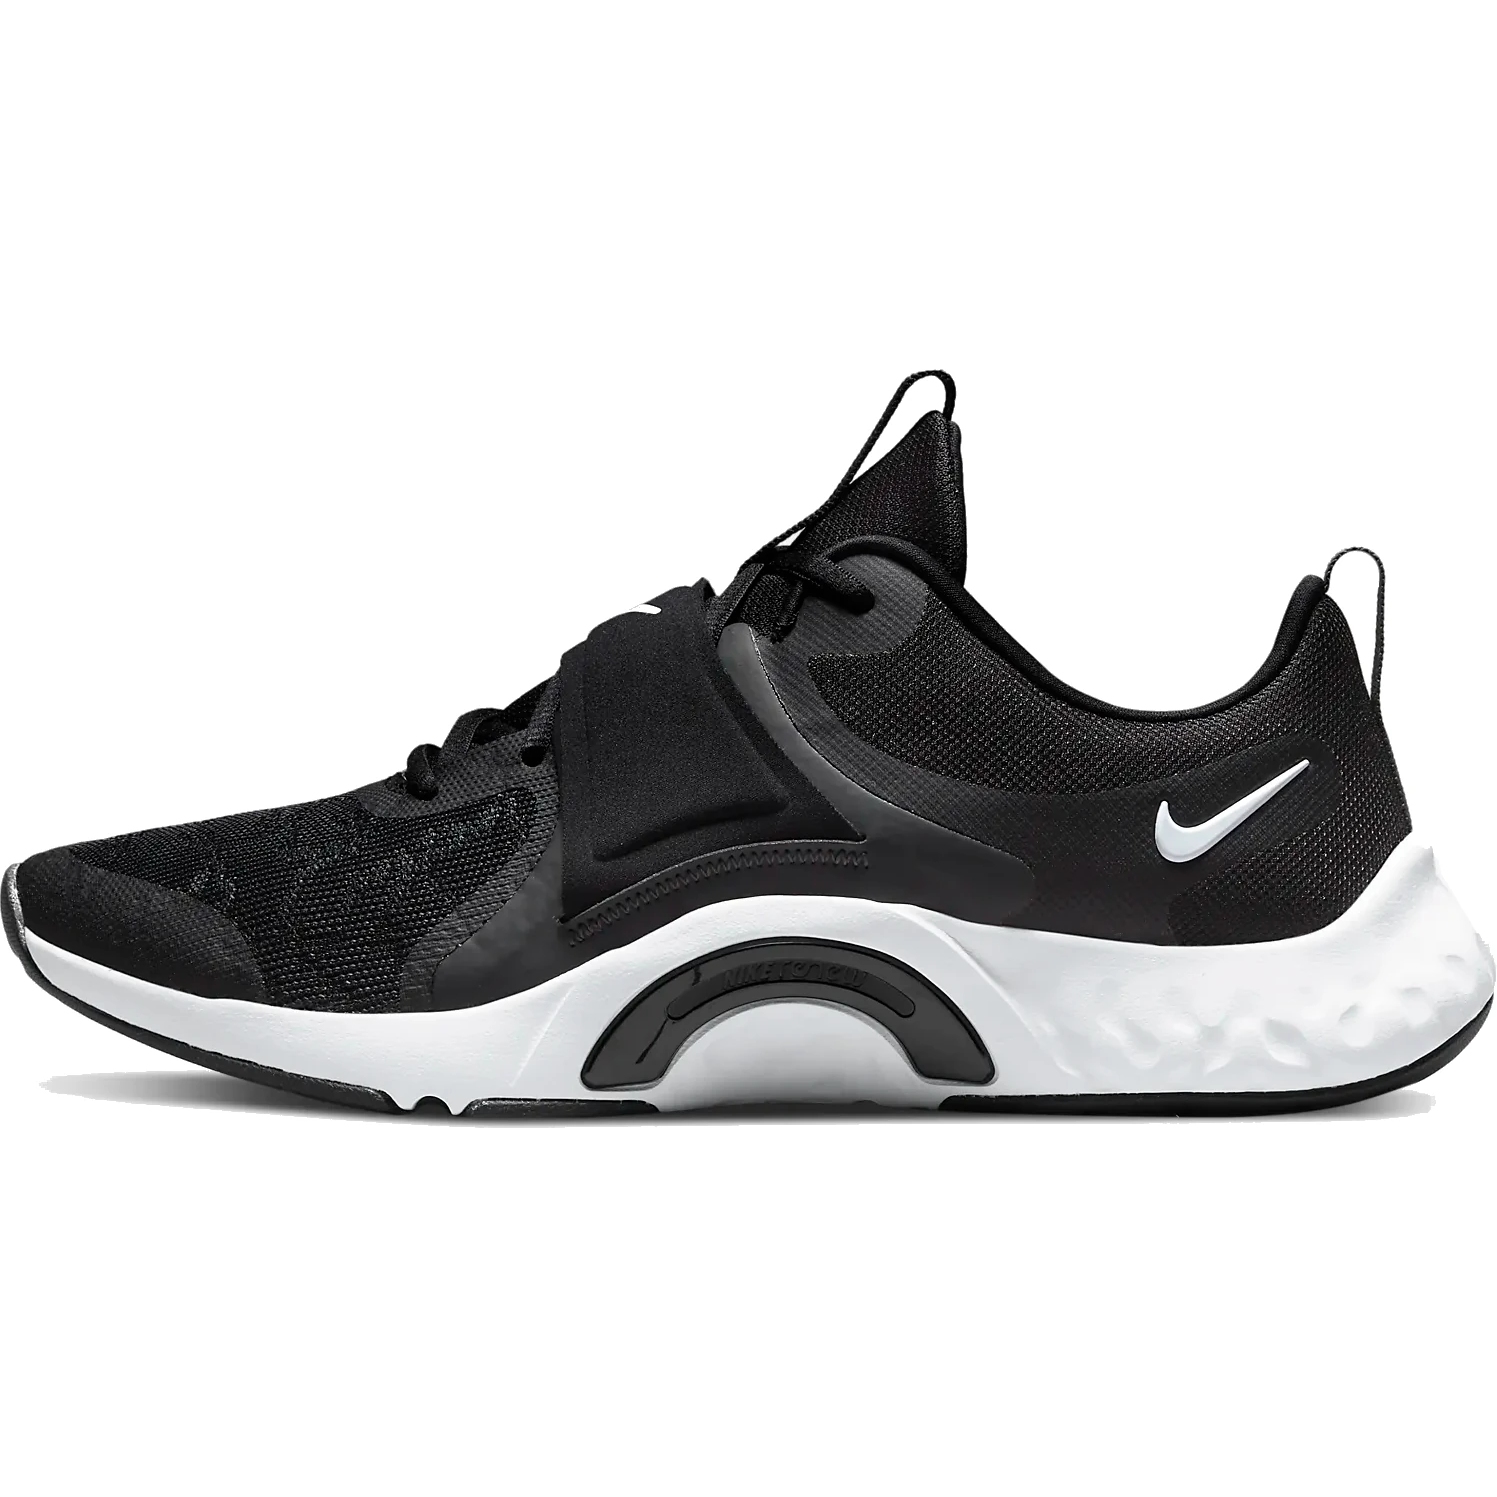 Immagine prodotto da Nike Scarpe Donna - Renew In-Season TR 12 - black/white-dark smoke grey DD9301-001